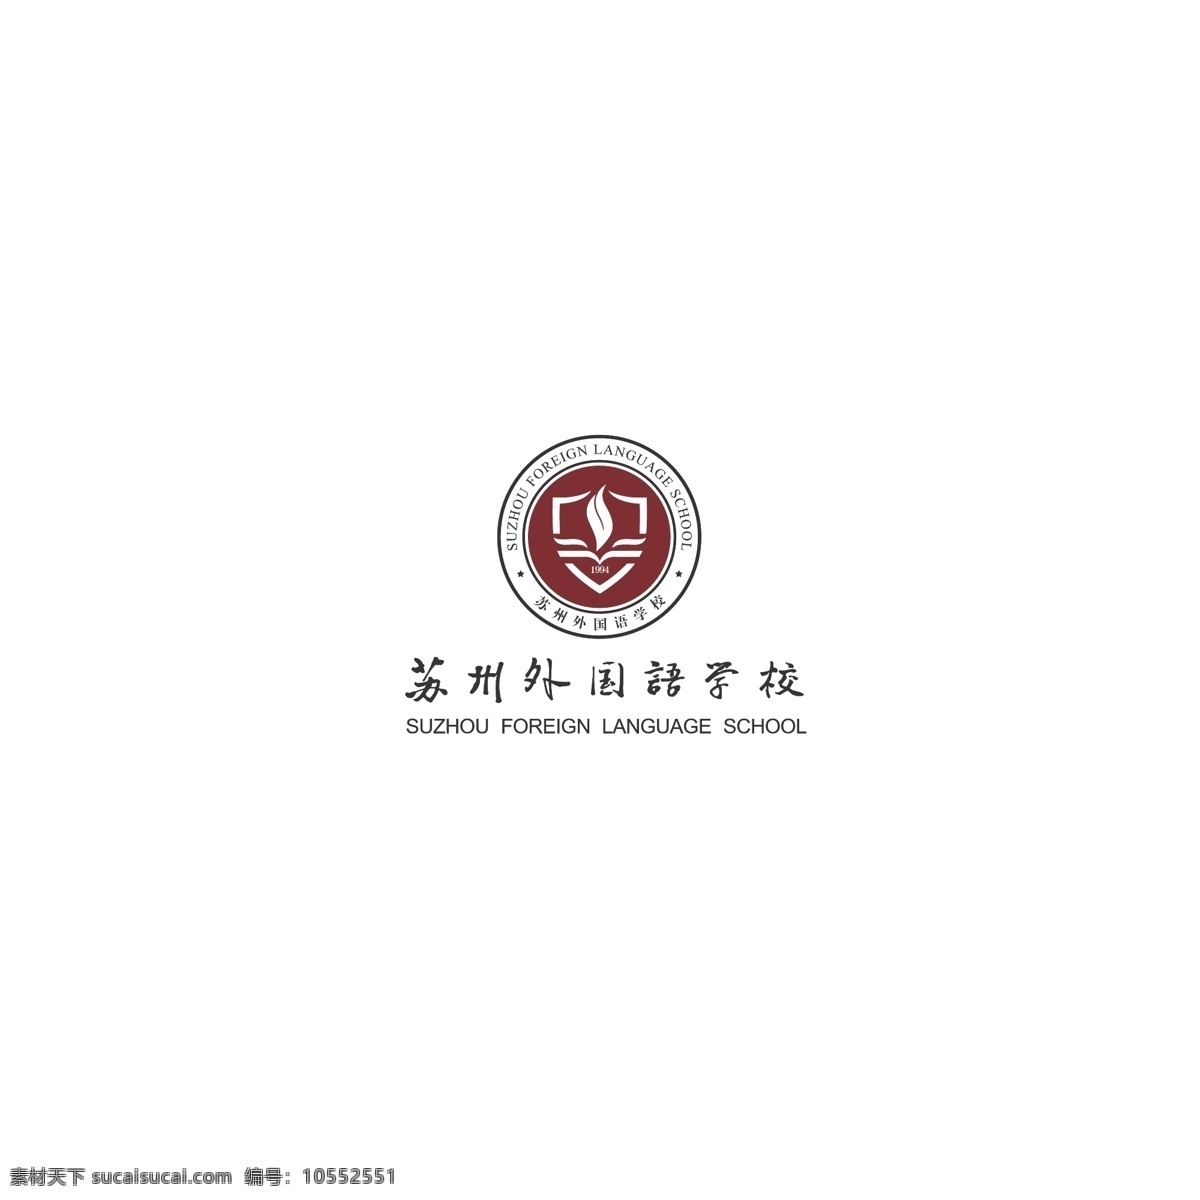 苏州 外国语 学校 logo 苏州外国语 标记 徽标 矢量标记 标志图标 企业 标志